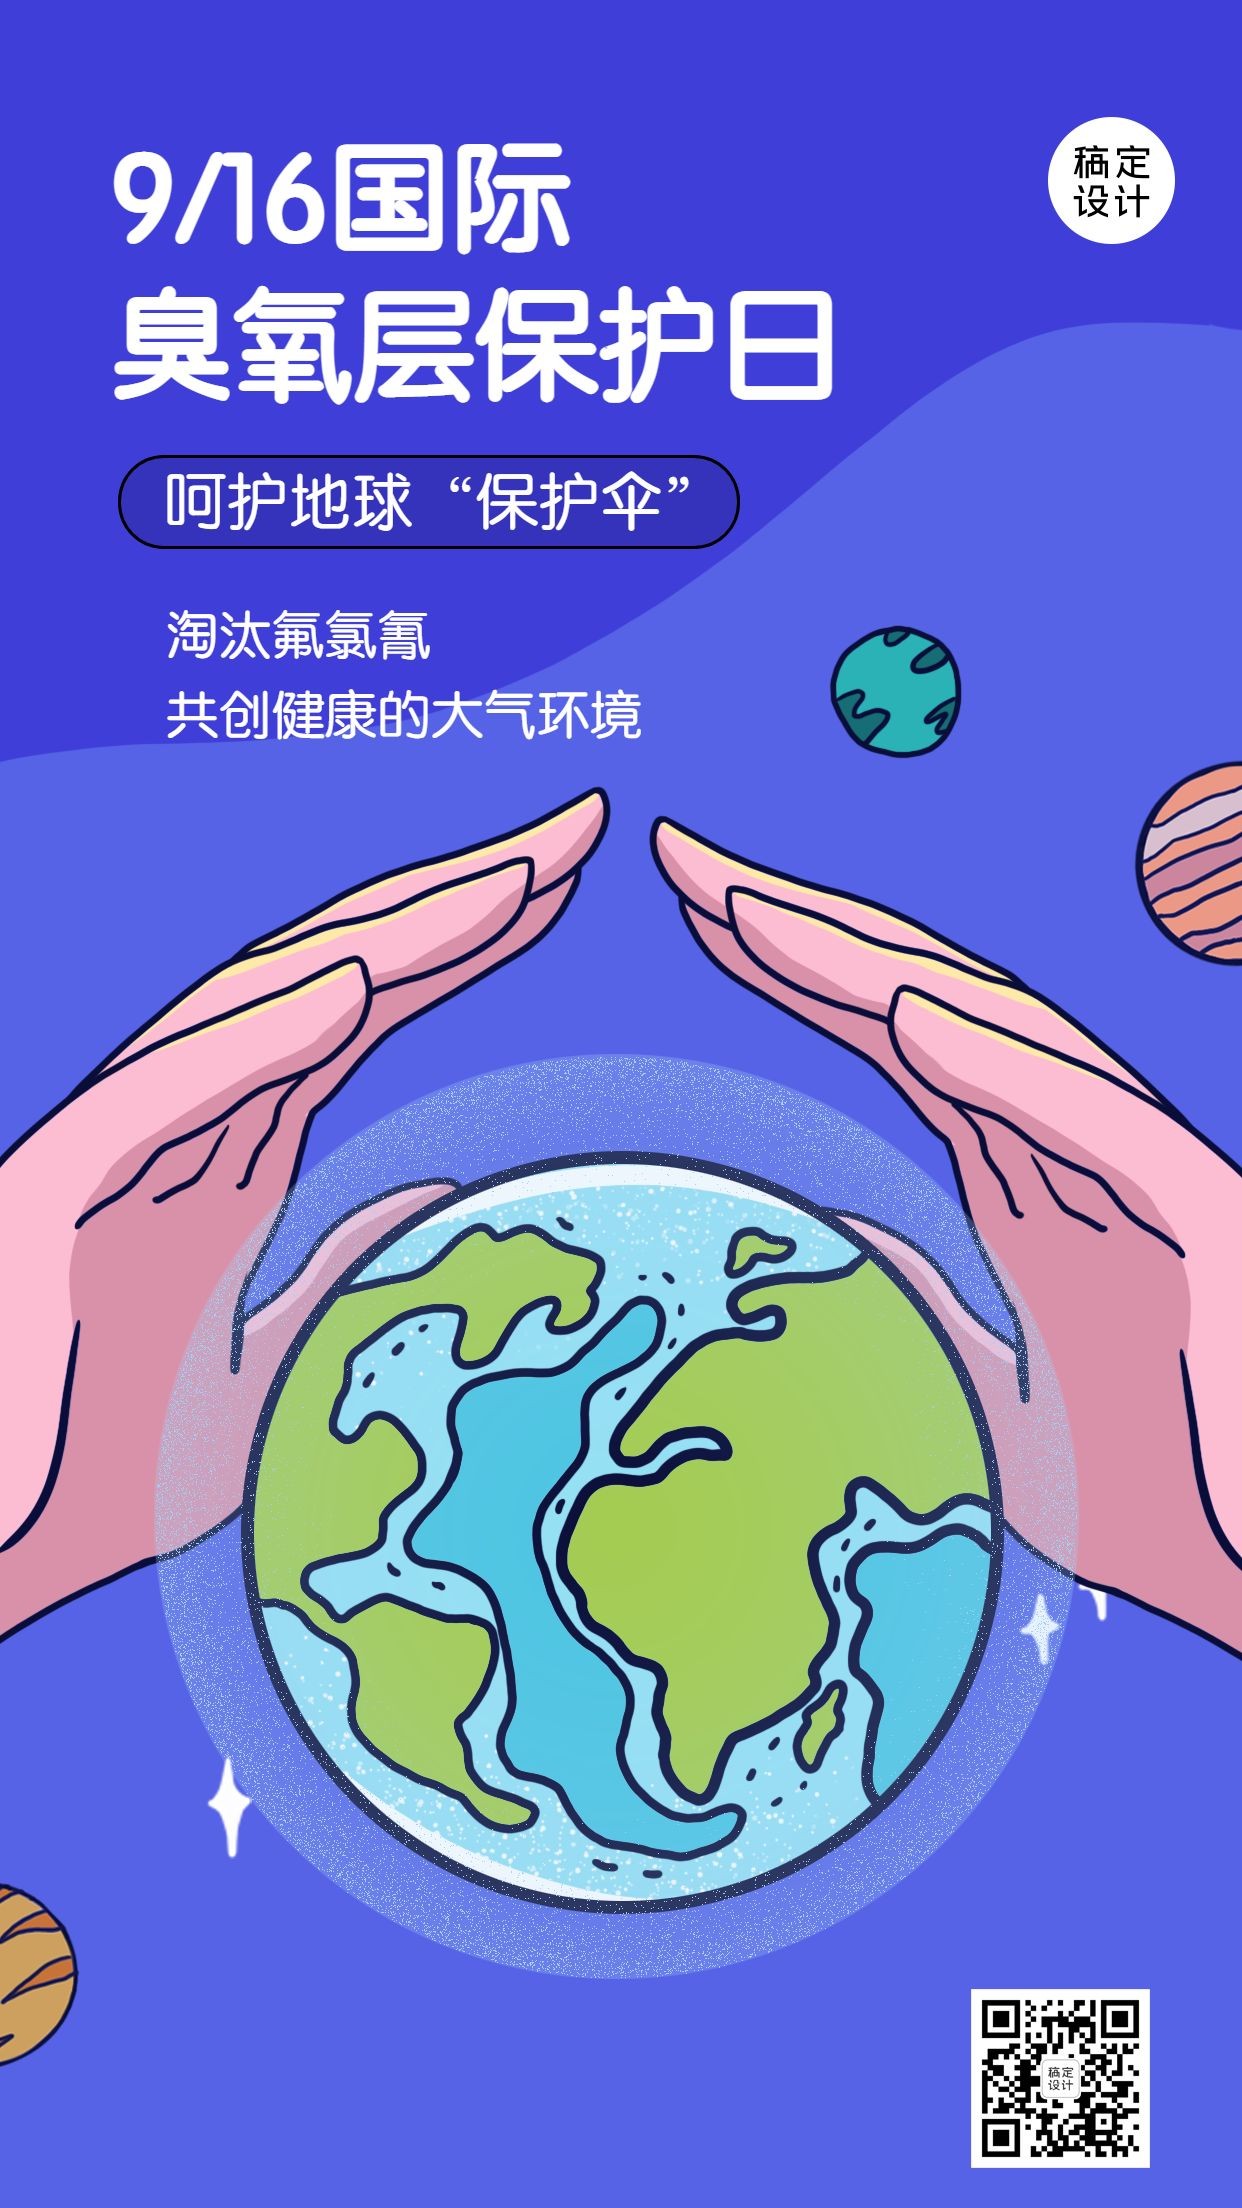 国际臭氧层保护日绿色环境海报